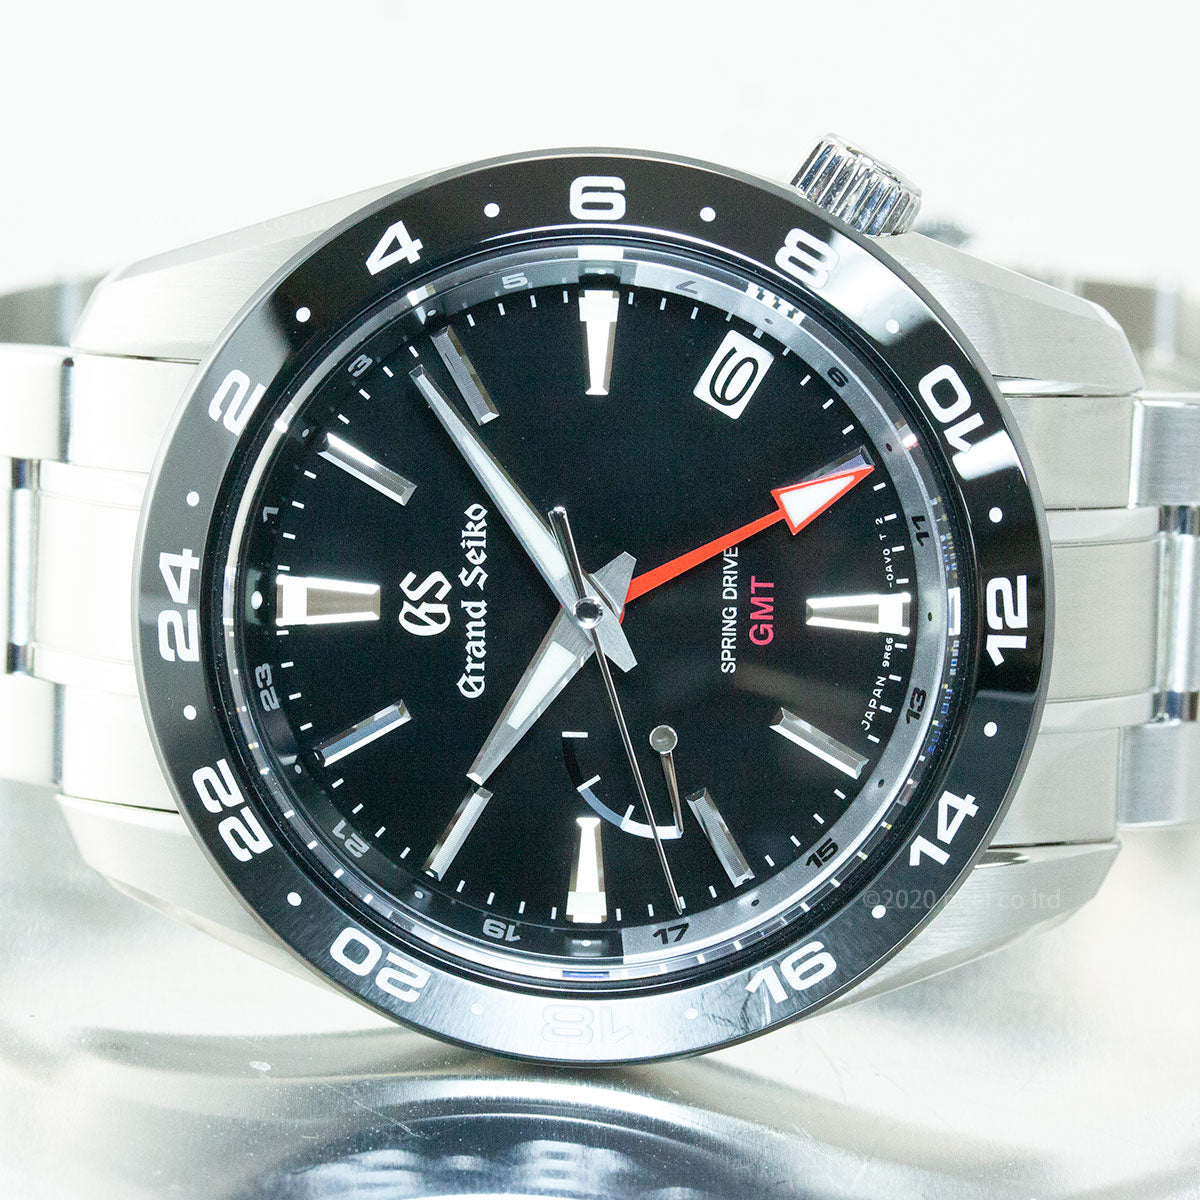 グランドセイコー GRAND SEIKO 腕時計 メンズ スプリングドライブ SBGE253【正規品】【36回無金利ローン】